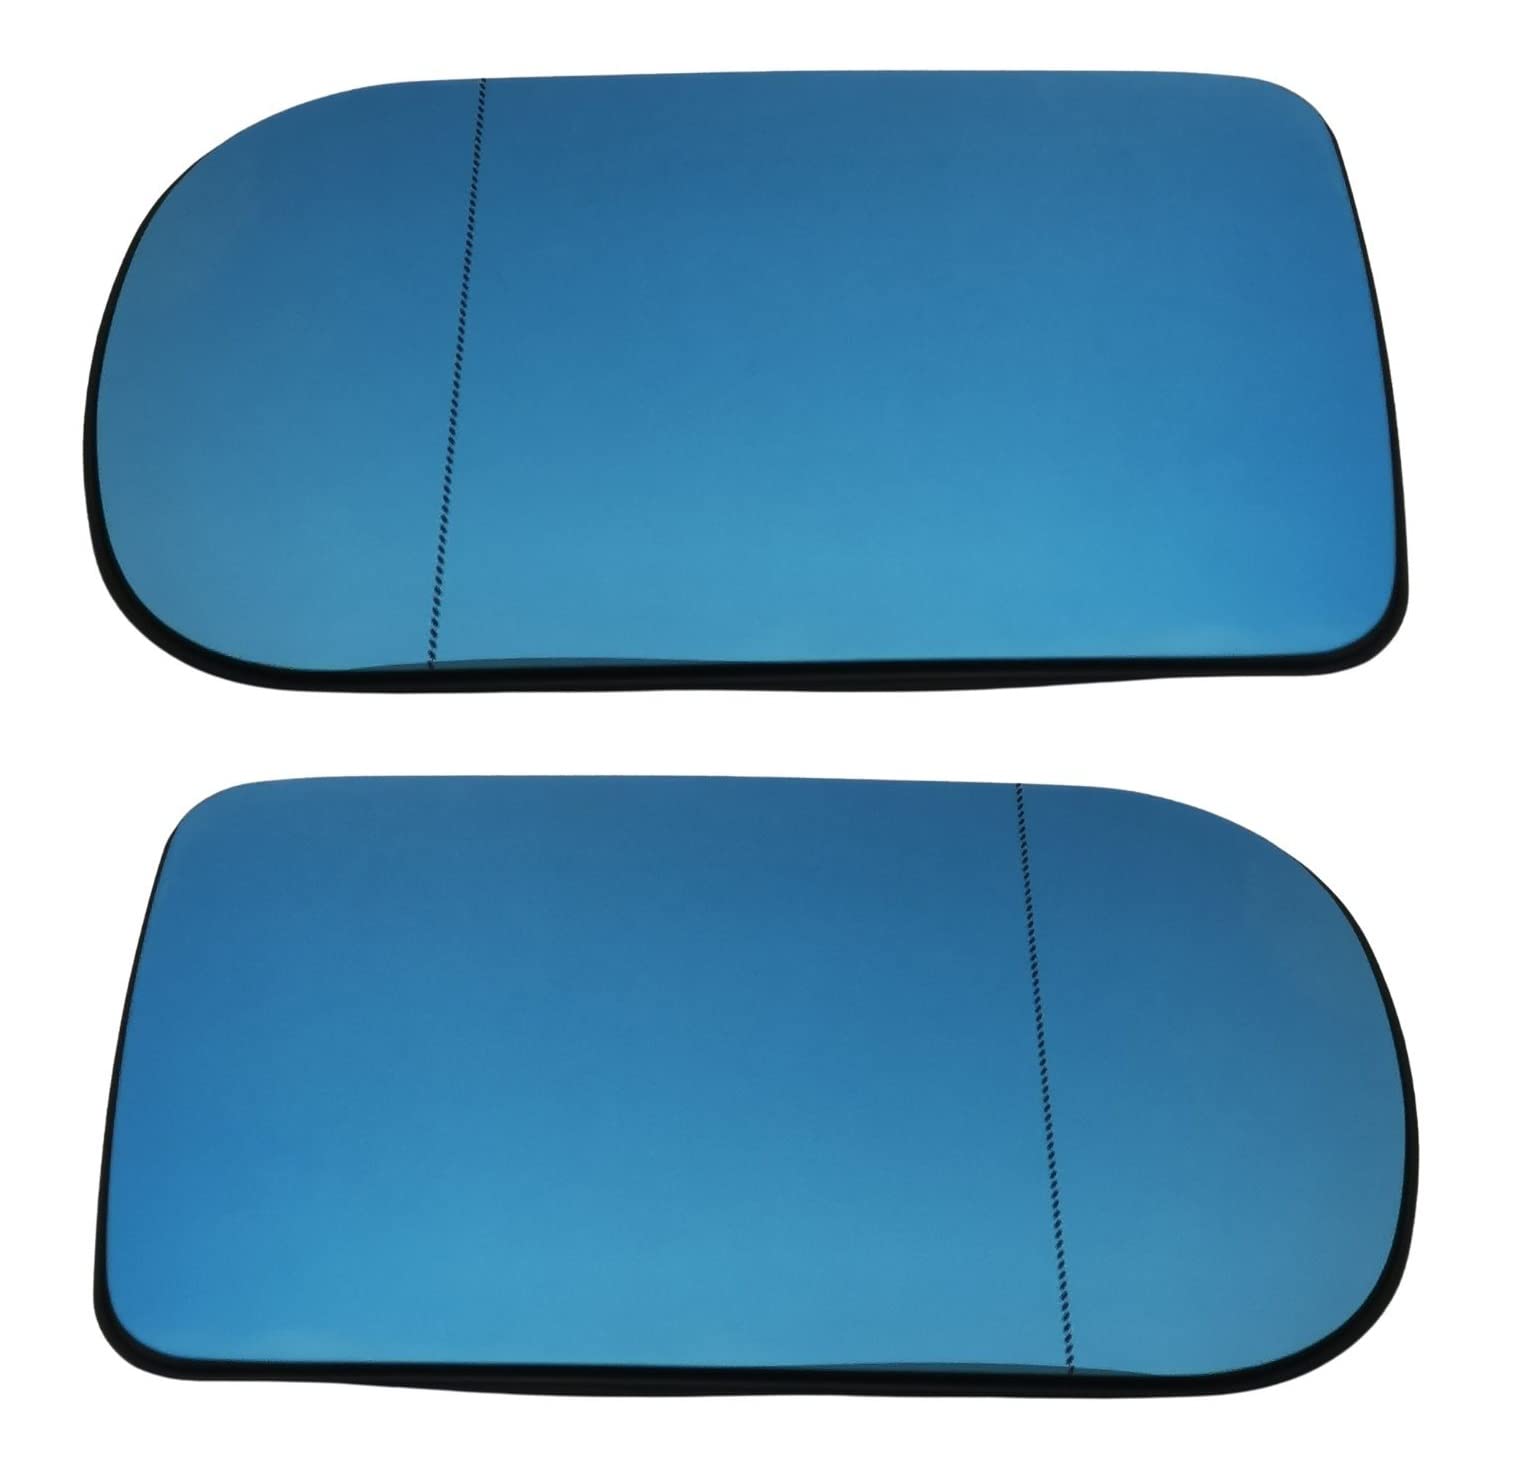 Für Fahrer- und Beifahrerseite Spiegelglas Asphärisch Blau beheizt LINKS und RECHTS für BMW E38 E39 Maße 166x106mm SET von goingfast